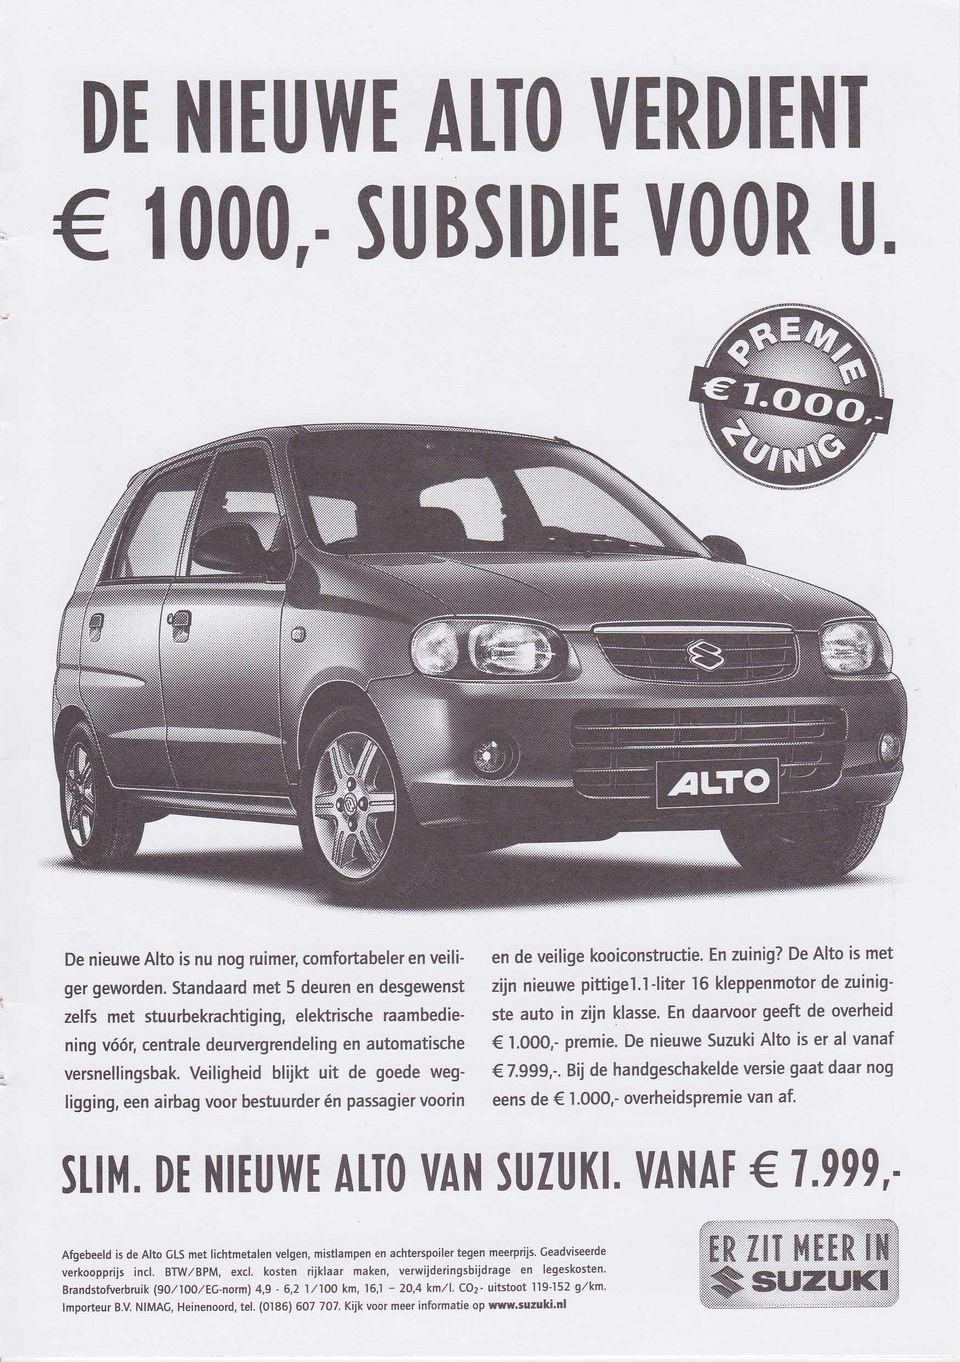 En daarvoor geeft de overheid ning vóór, centrale deurvergrendeling en automatische I.OOO,- premie. De nieuwe Suzuki Alto is er al vanaf versnellingsbak. Veiligheid blijh uit de goede weg- 7.999,-.